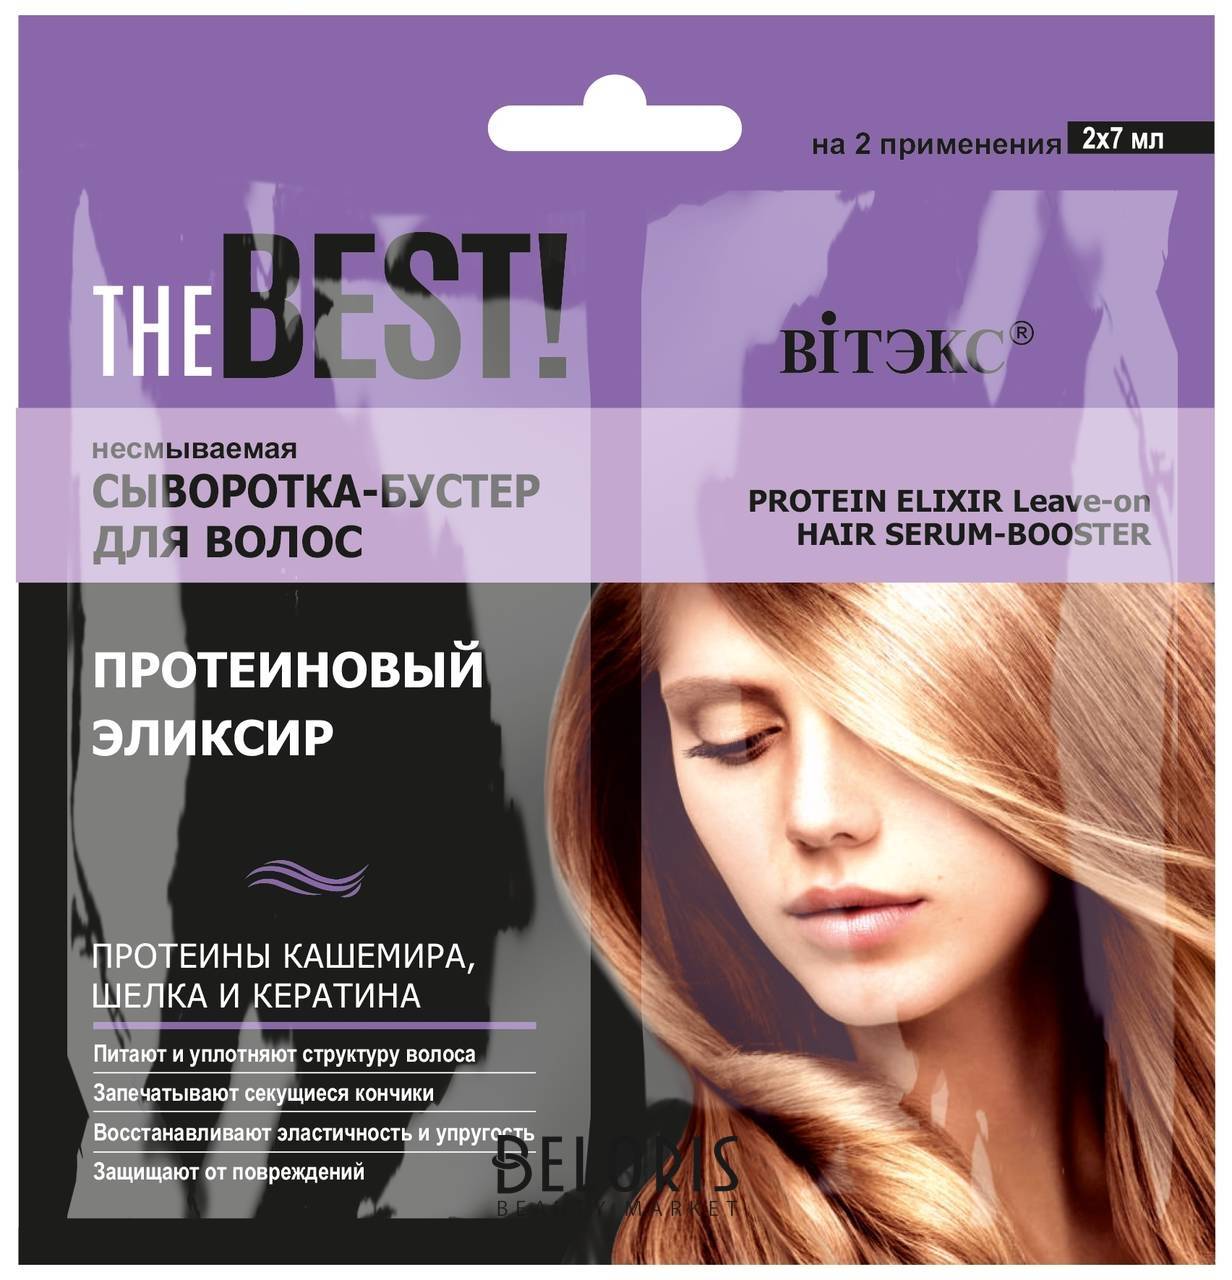 Несмываемая сыворотка-бустер для волос протеиновый эликсир THE Best! Белита - Витекс THE Best!